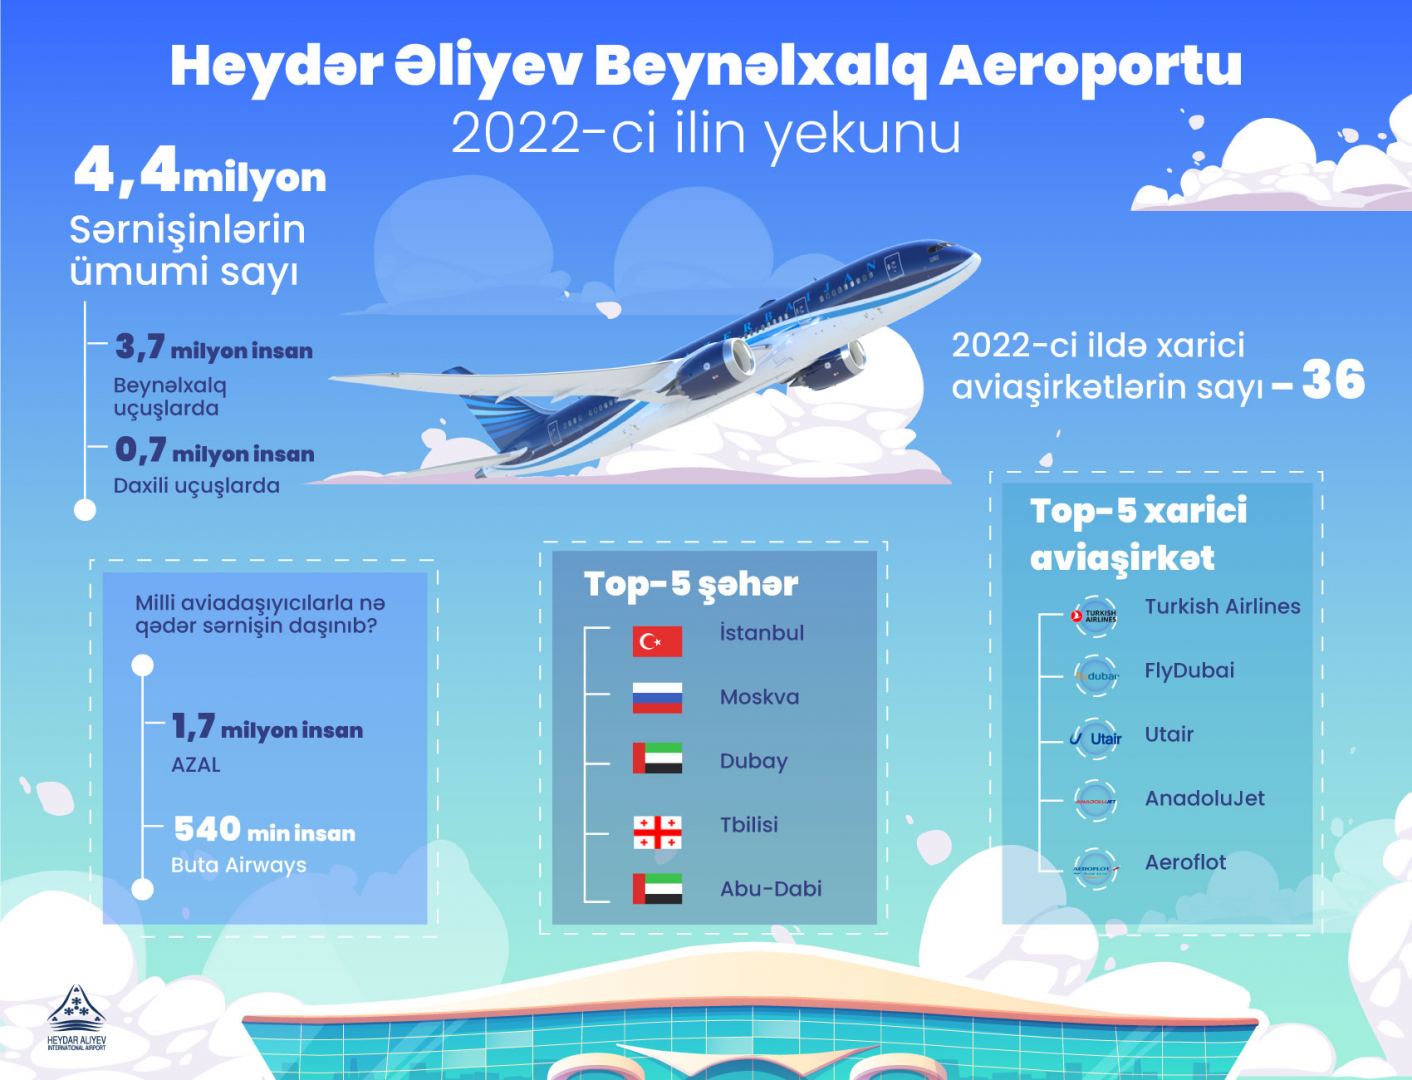 2022-ci ildə ümumi 36 min aviareys yerinə yetirilib - Samir Rzayev